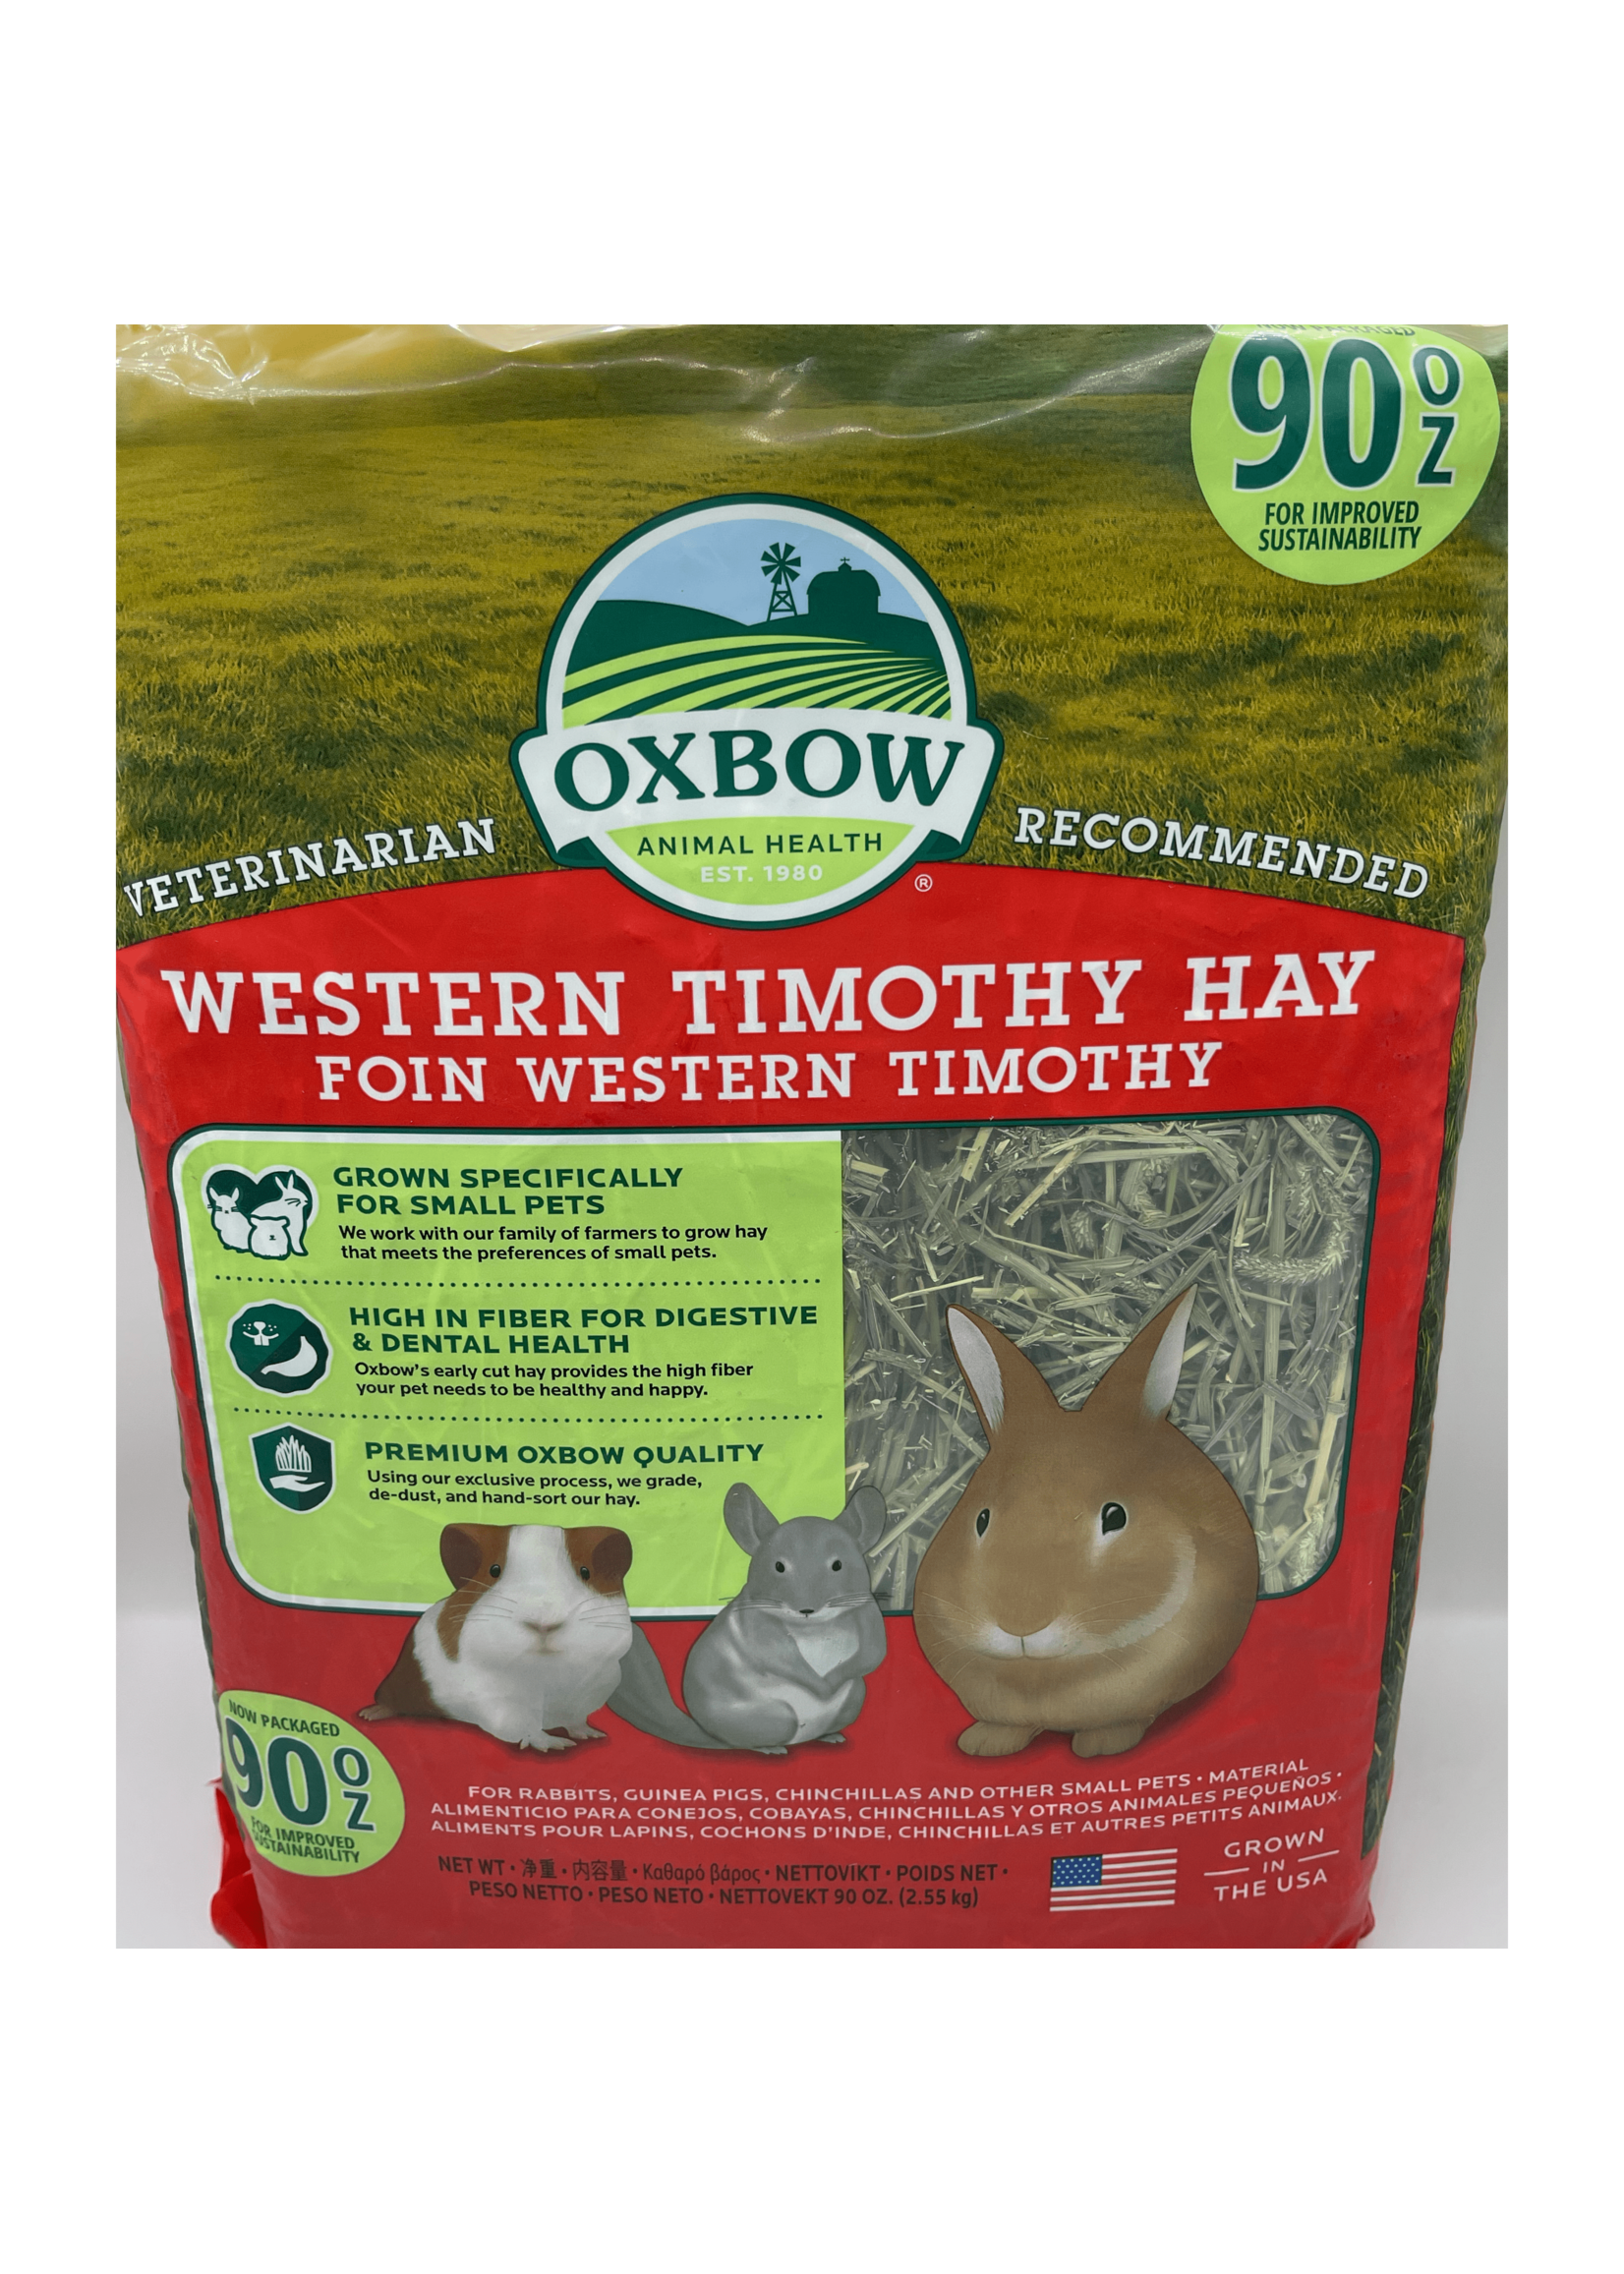 Oxbow Oxbow Western Timothy Hay, 90oz